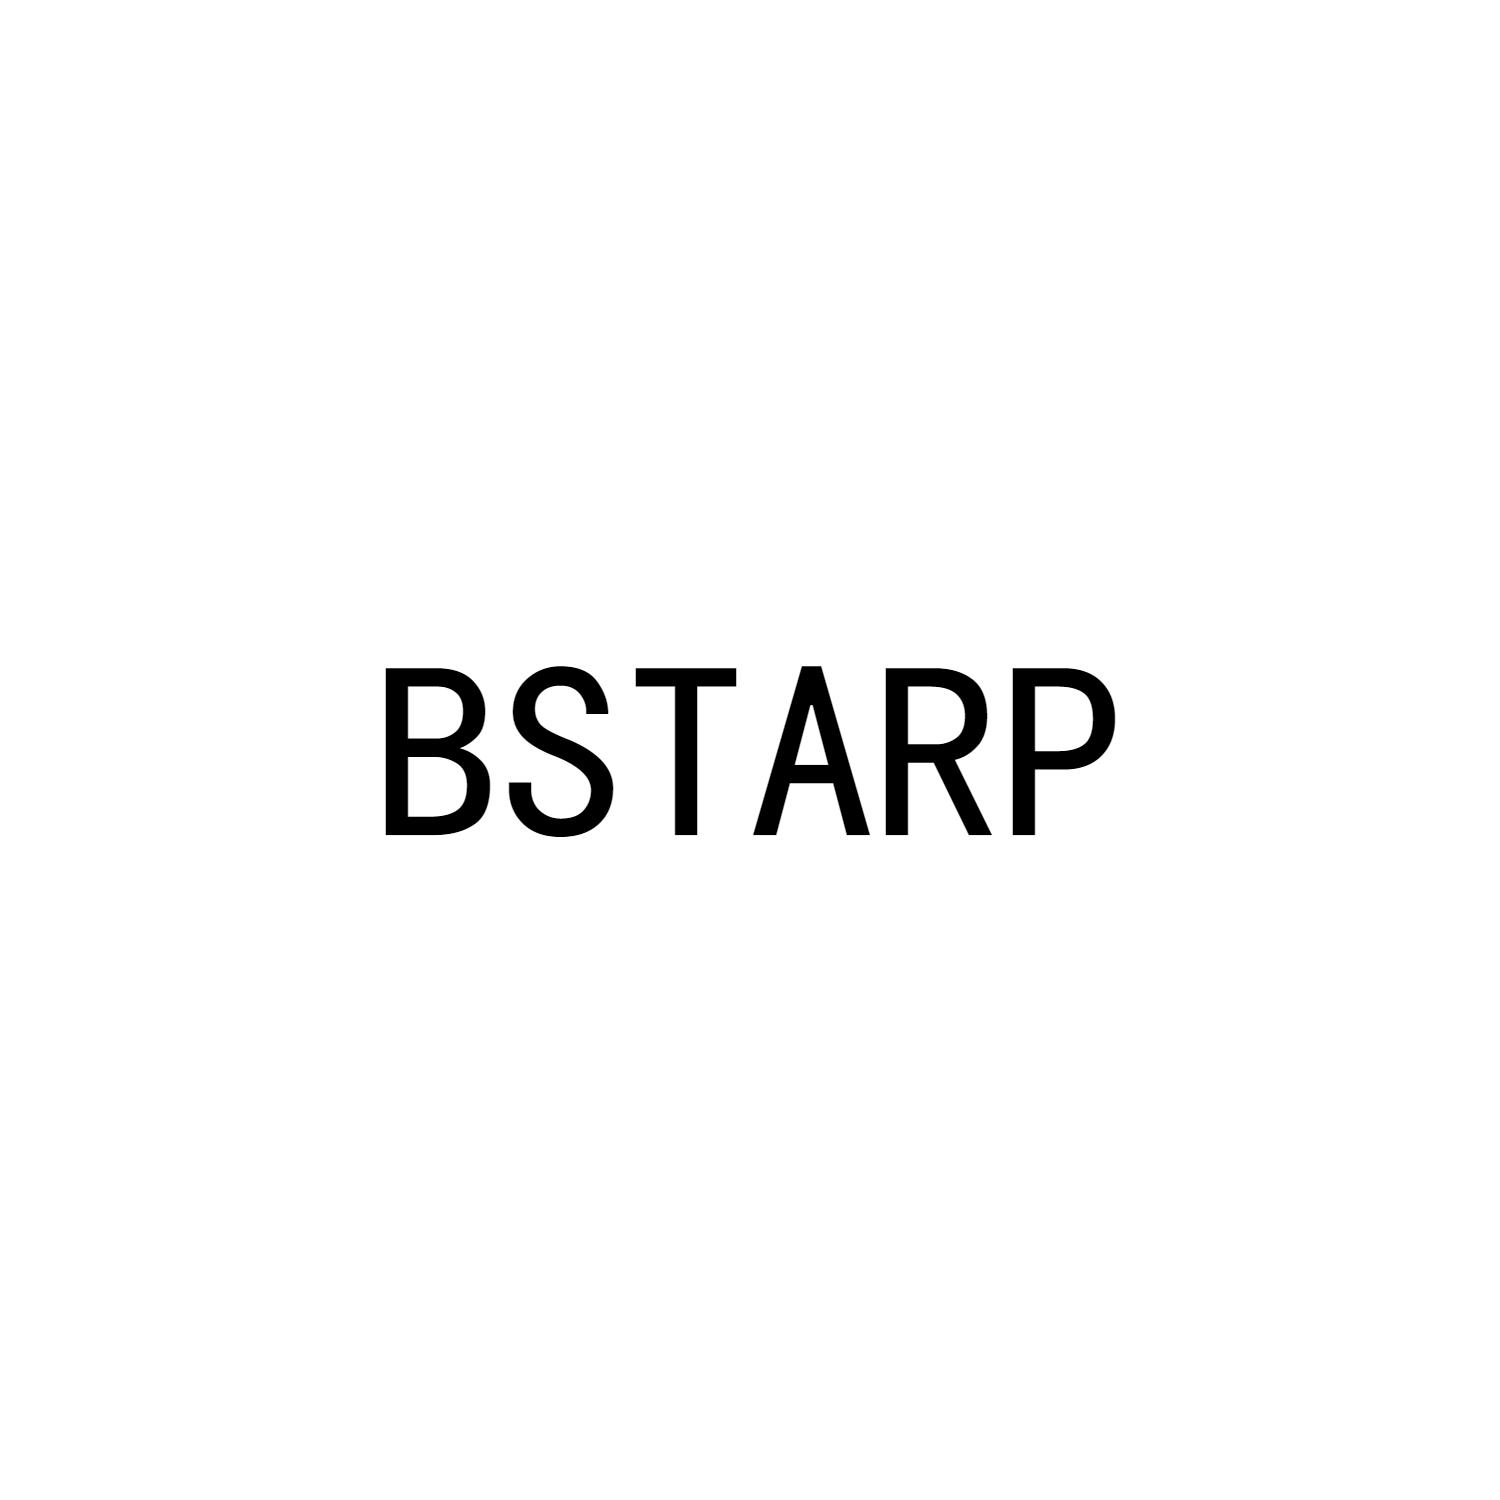 BSTARP